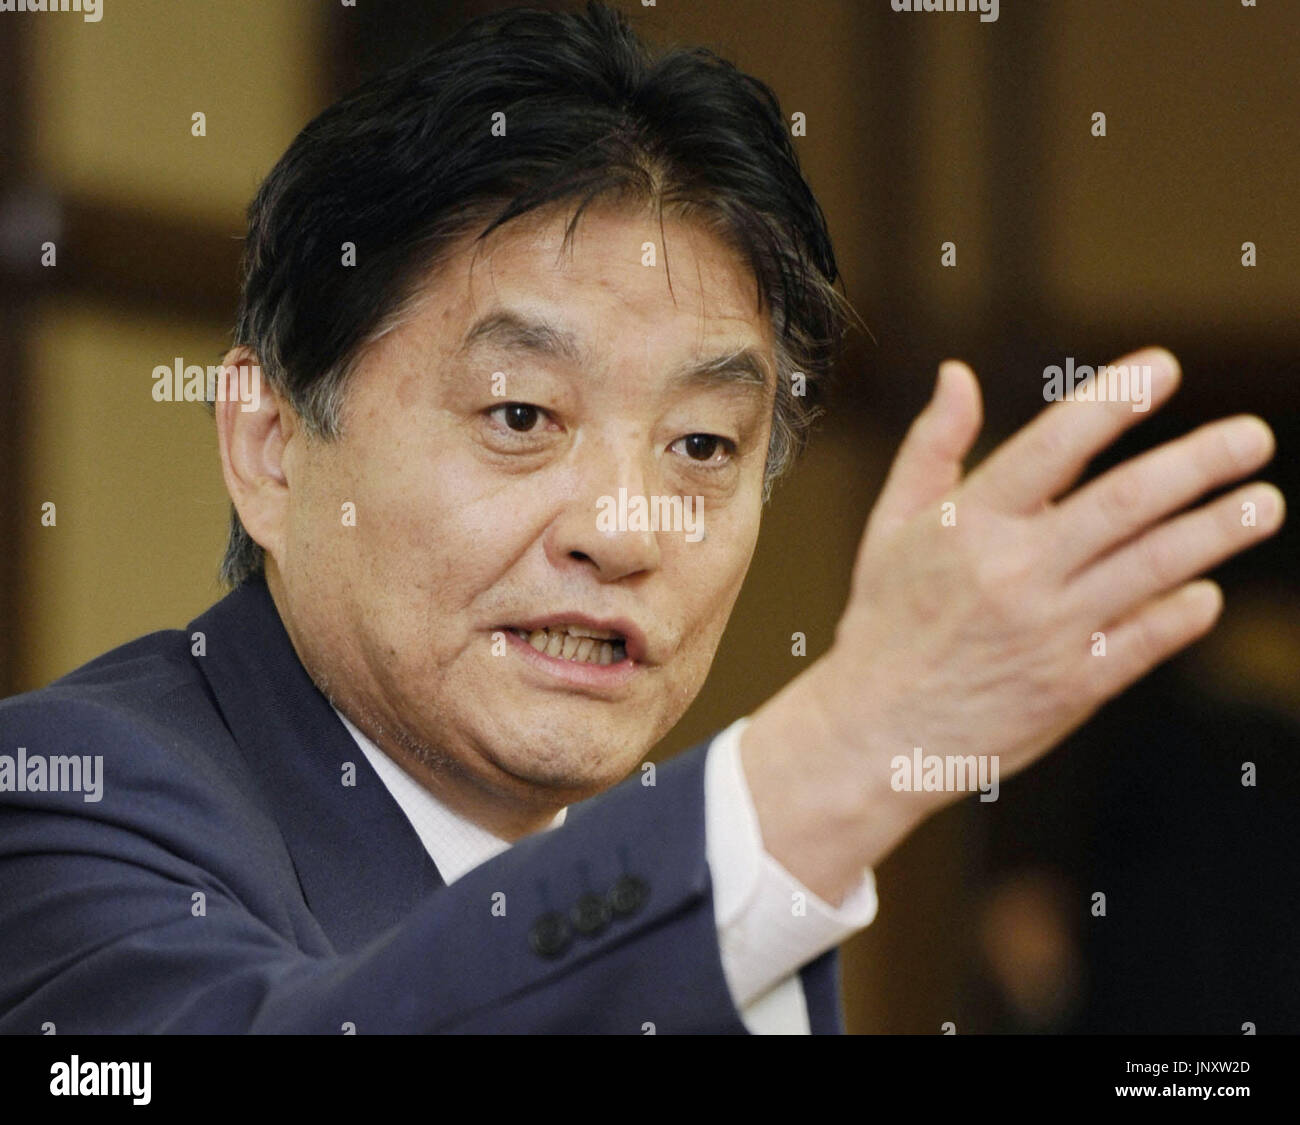 NAGOYA, Japan - Nagoya Mayor Takashi Kawamura speaks at a press ...